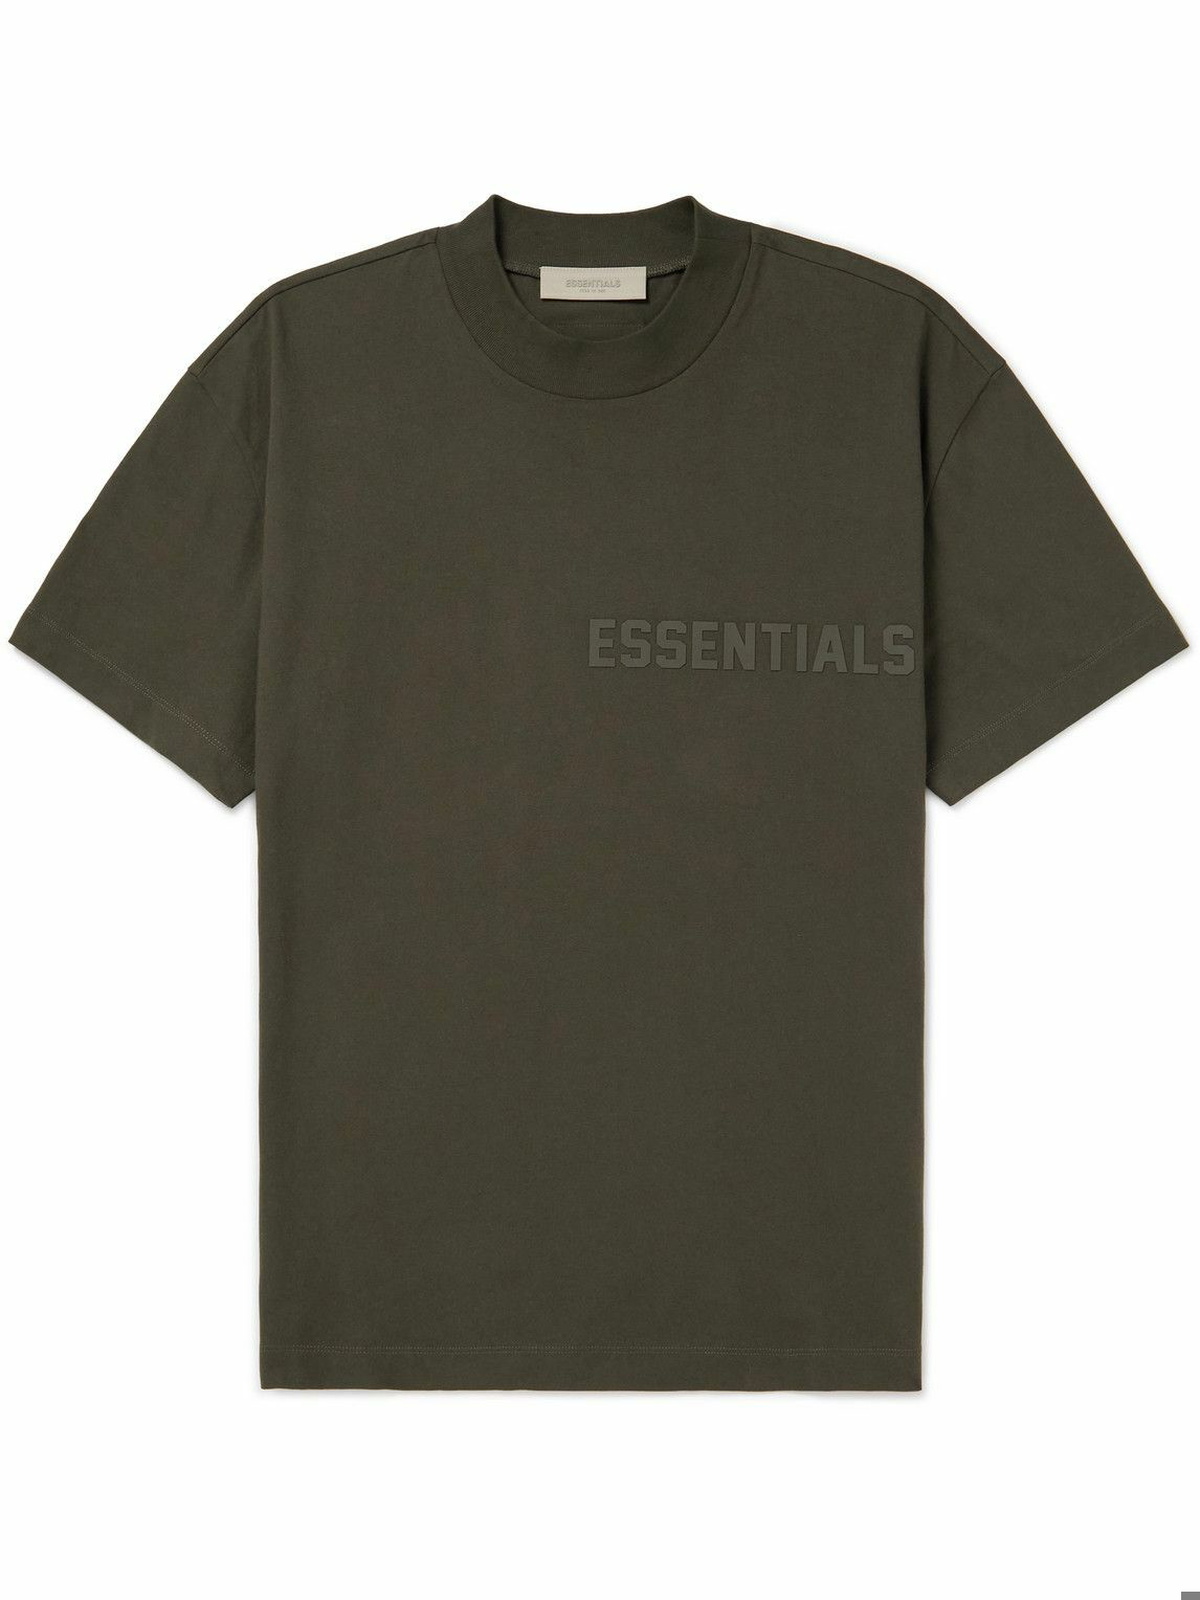 FEAR OF GOD ESSENTIALS - Logo-Appliquéd Cotton-Jersey T-Shirt - Green ...